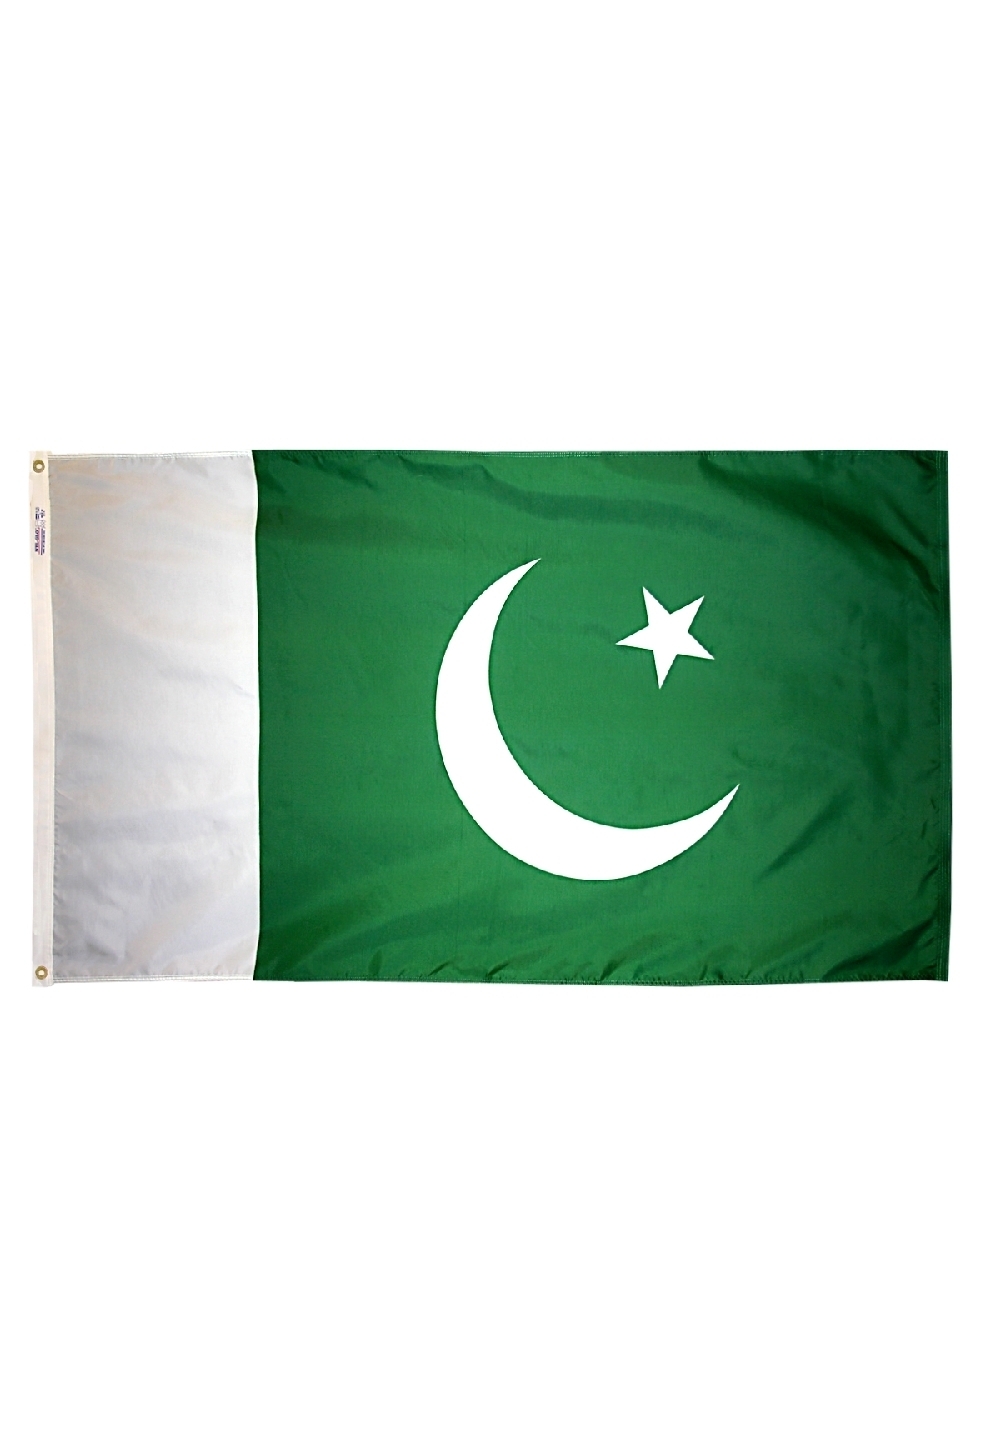 Зеленый флаг с луной. Флаги мусульманских стран. Флаги мусульманских республик. Зелено белый флаг с полумесяцем и звездой. Флаг мусульманских государств.